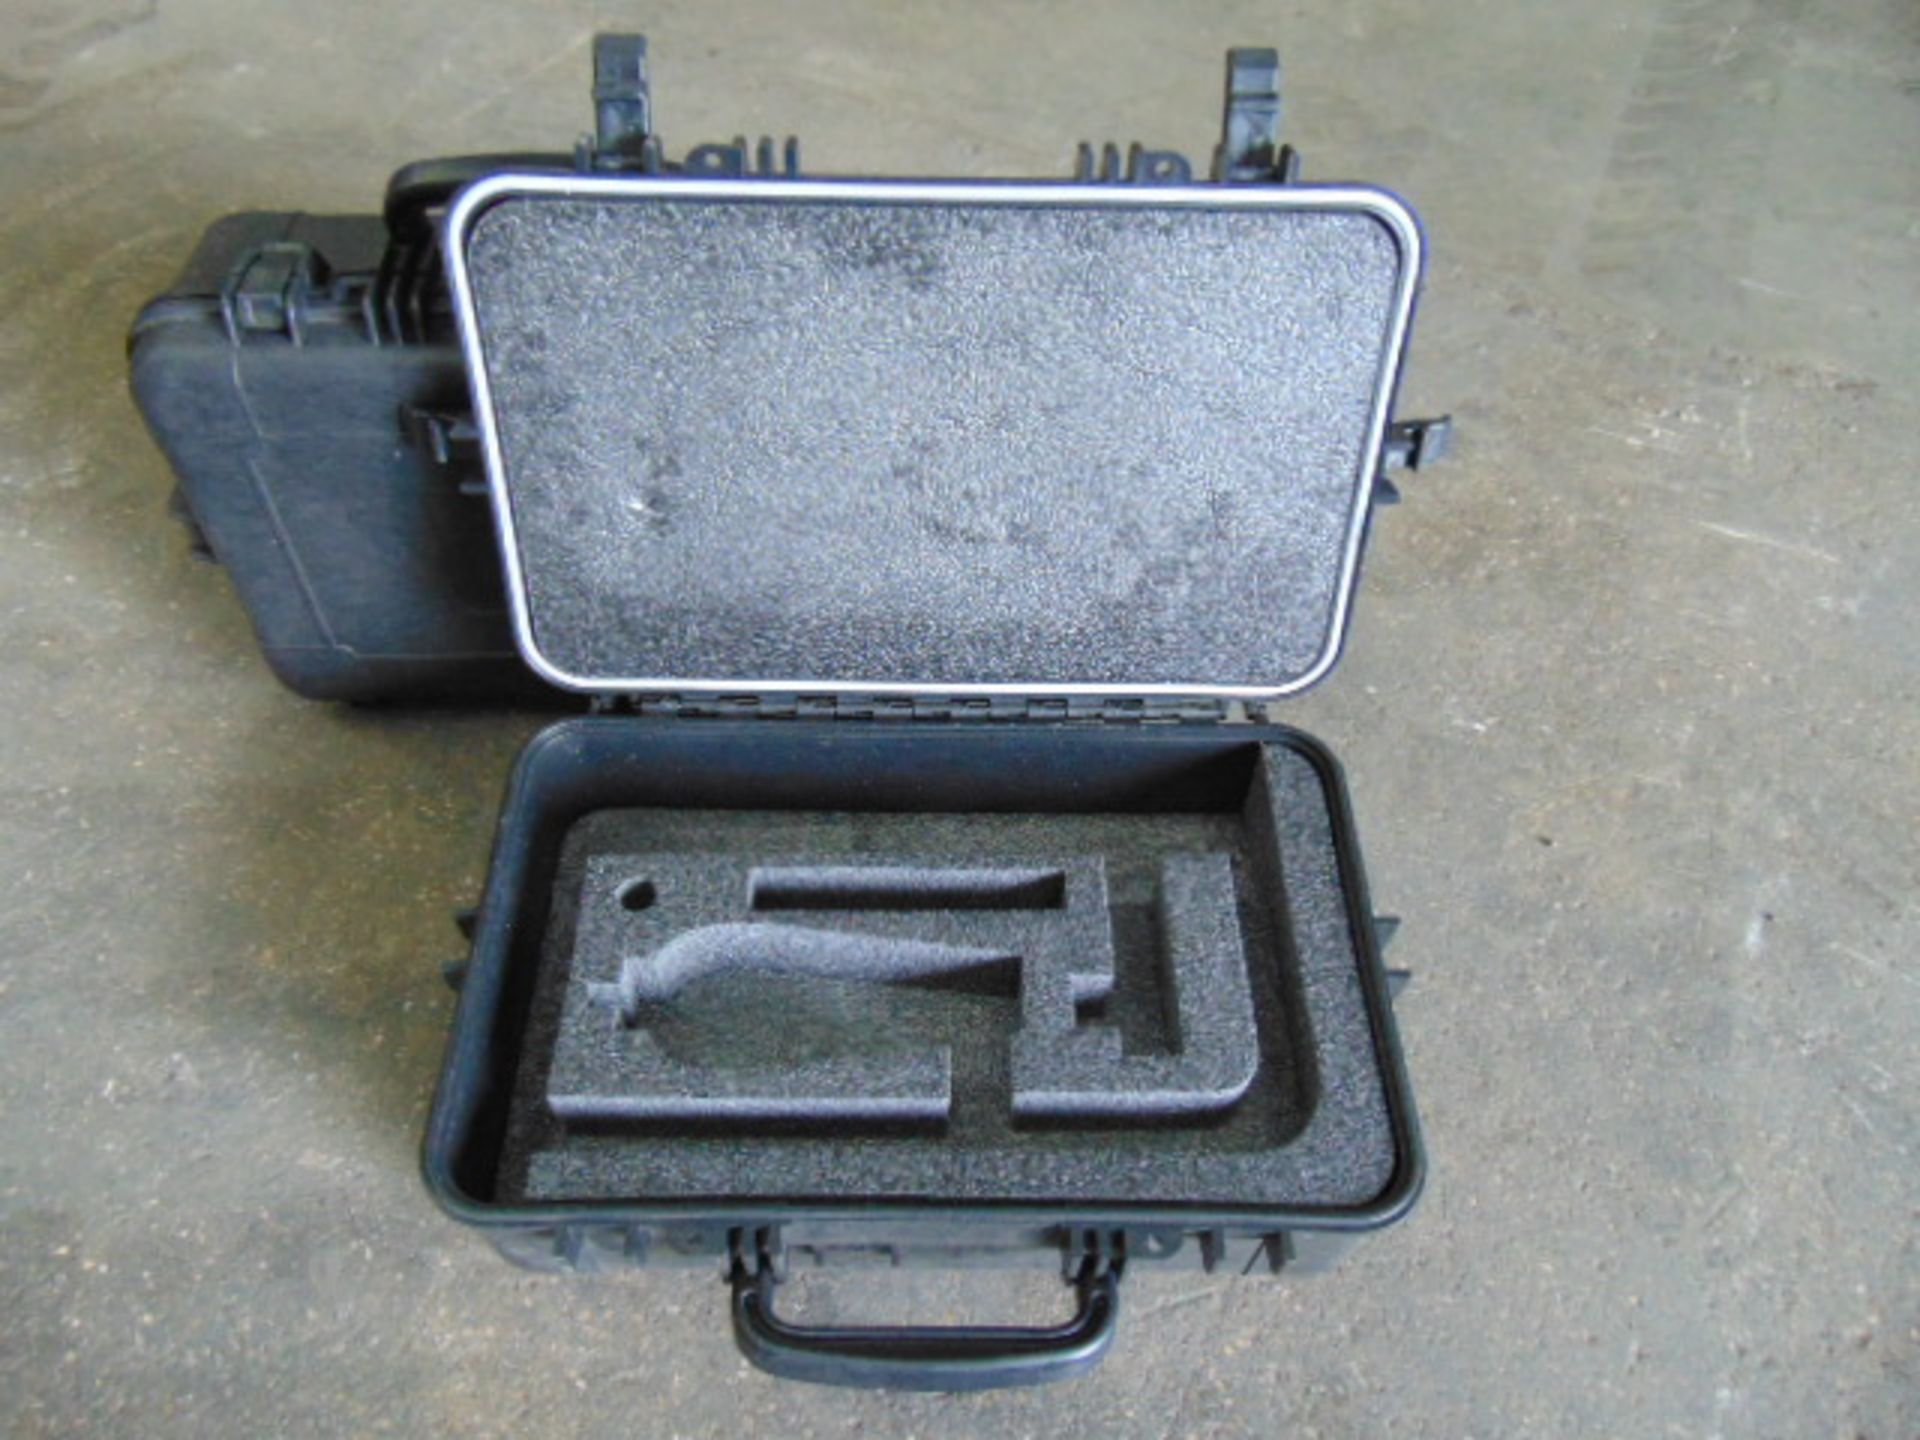 2 x Heavy-duty Waterproof Peli Style Hard Cases with Removeable Foam Inserts - Bild 5 aus 5